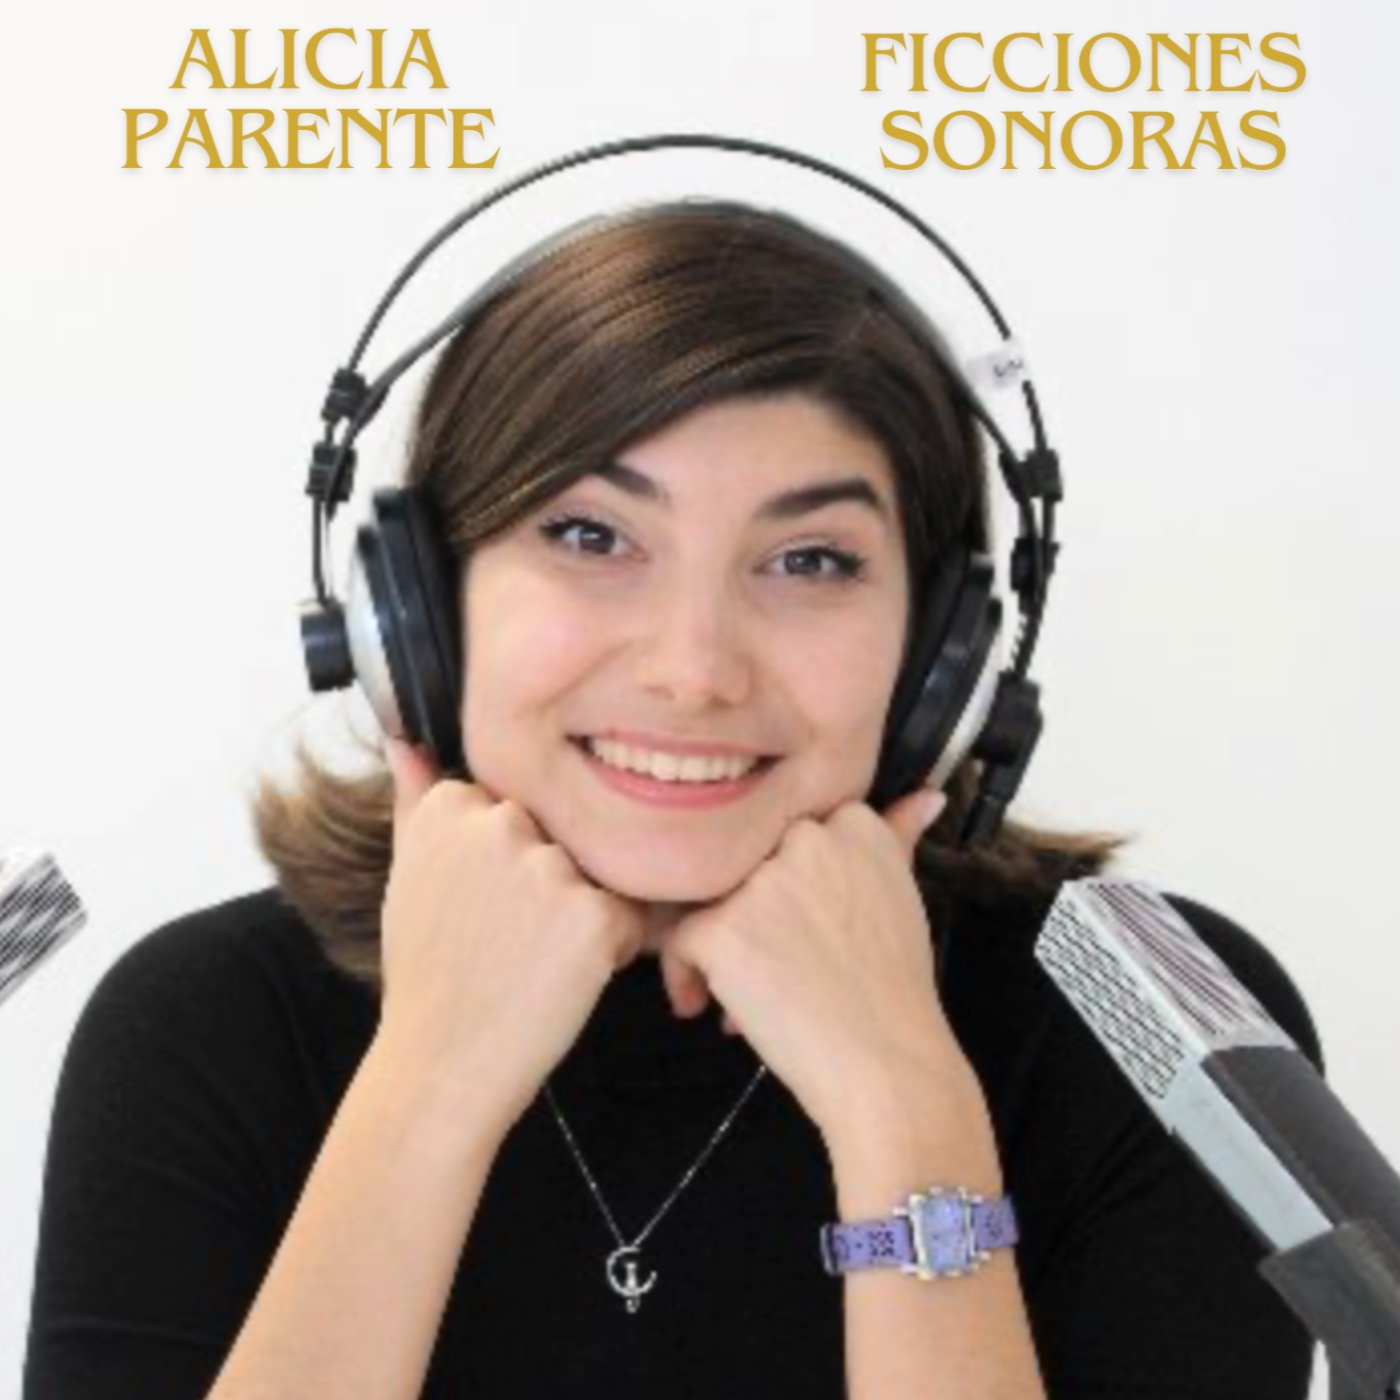 #40 Alicia Parente (Ficciones Sonoras)